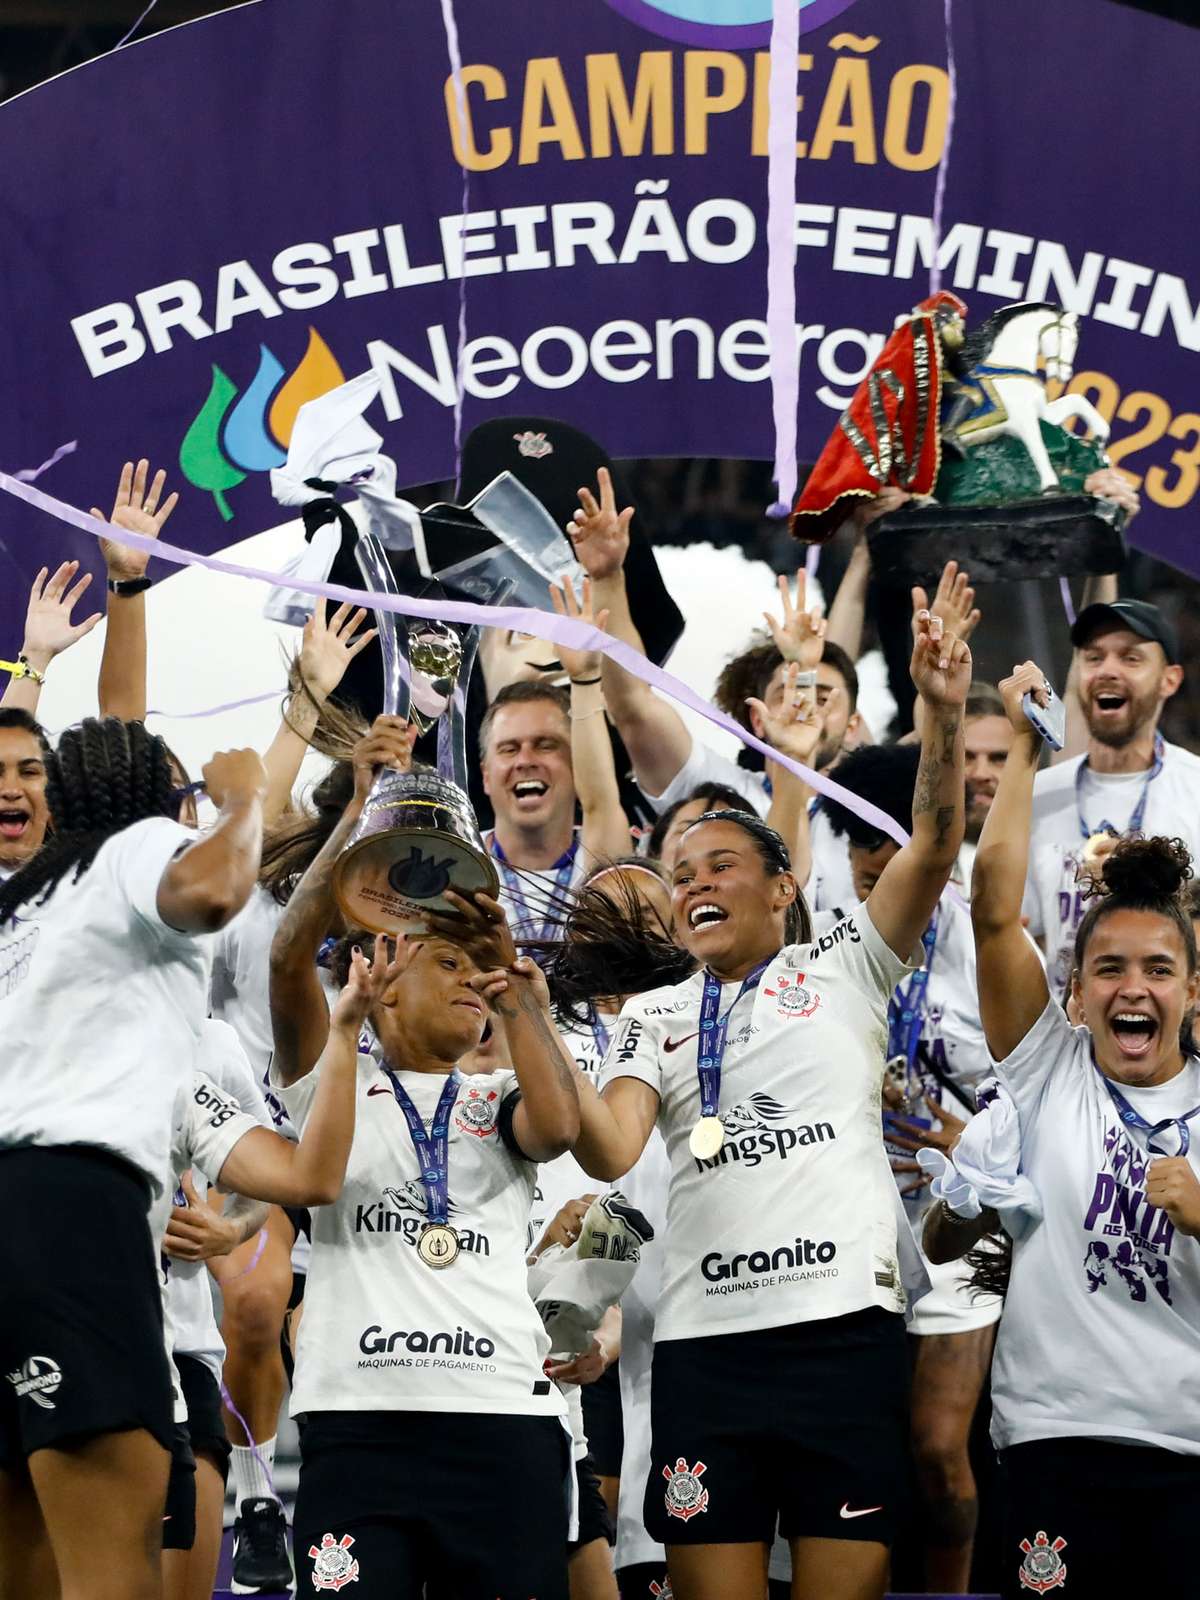 O Corinthians já apareceu na página oficial da Champions League